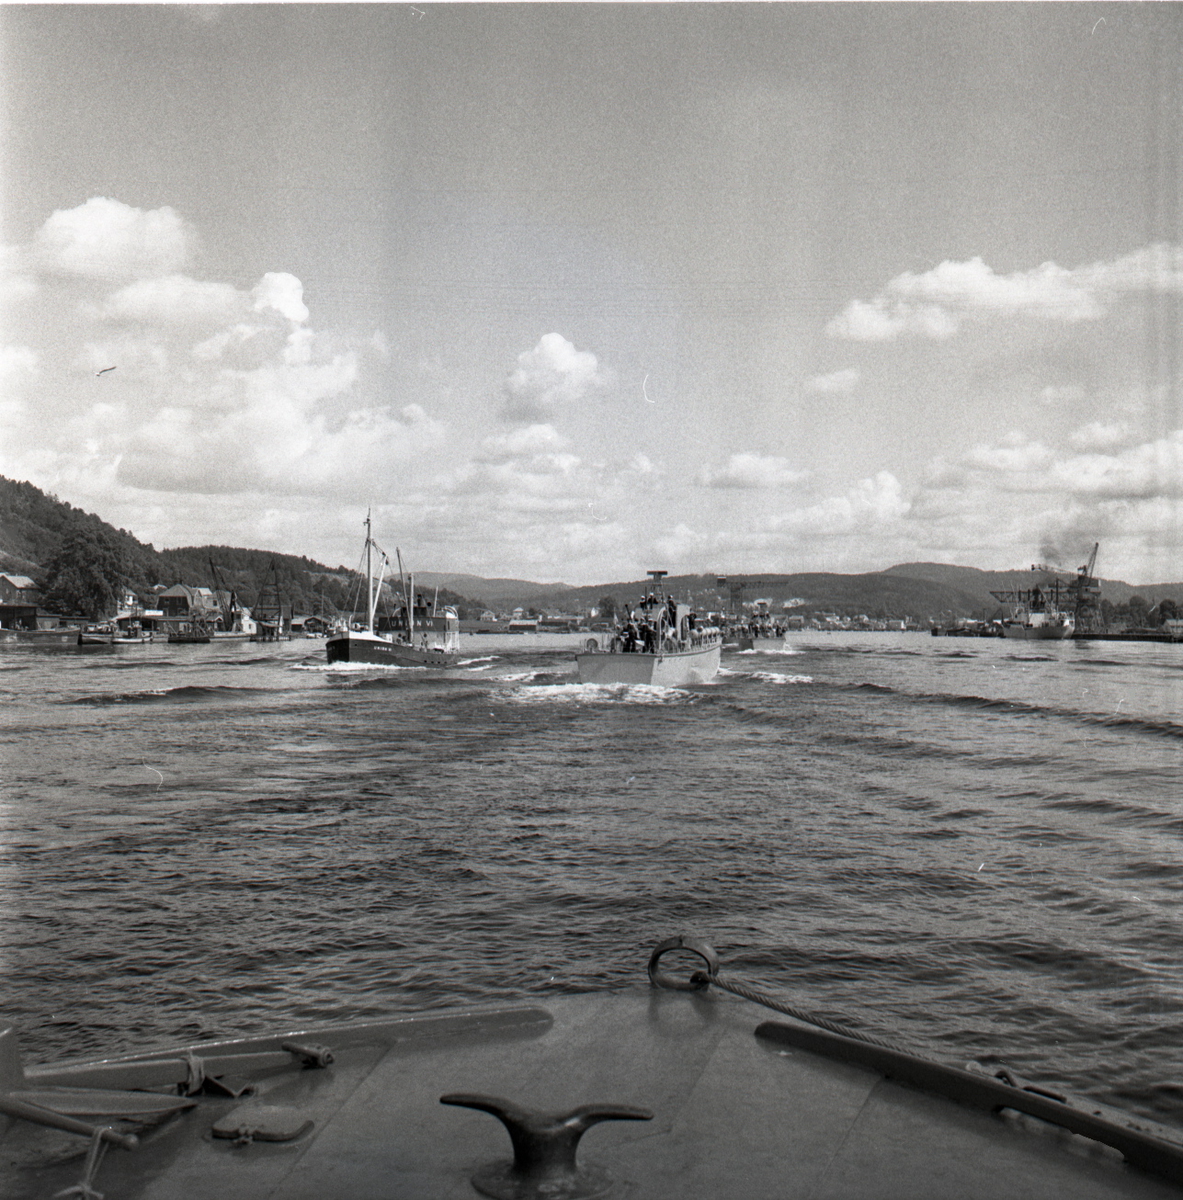 Samlefoto: Elco-klasse MTB-er gjennom Bandak-kanalen i juli 1953.
MTB-er og sivilbåt.